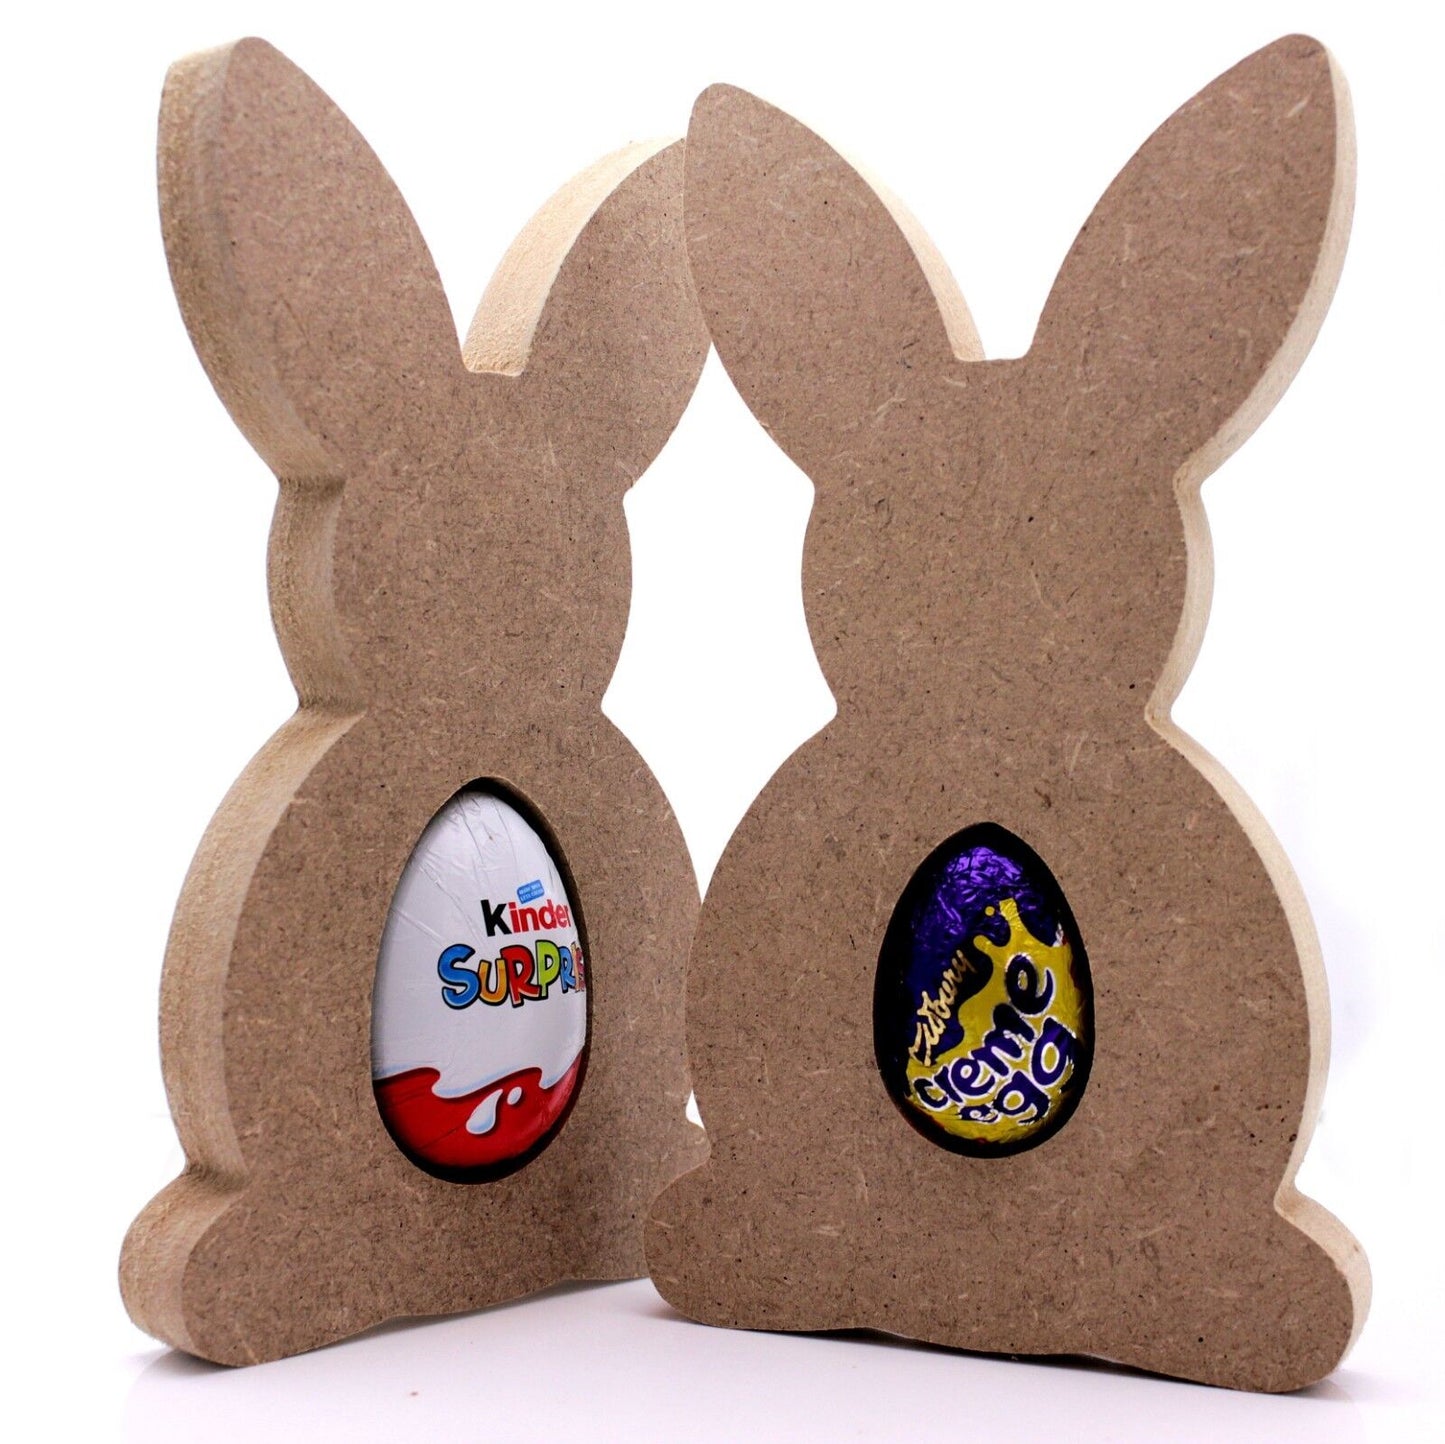 Free Standing 18mm MDF Easter Bunny Egg Holder Shape. Kinder Egg, Creme Egg.